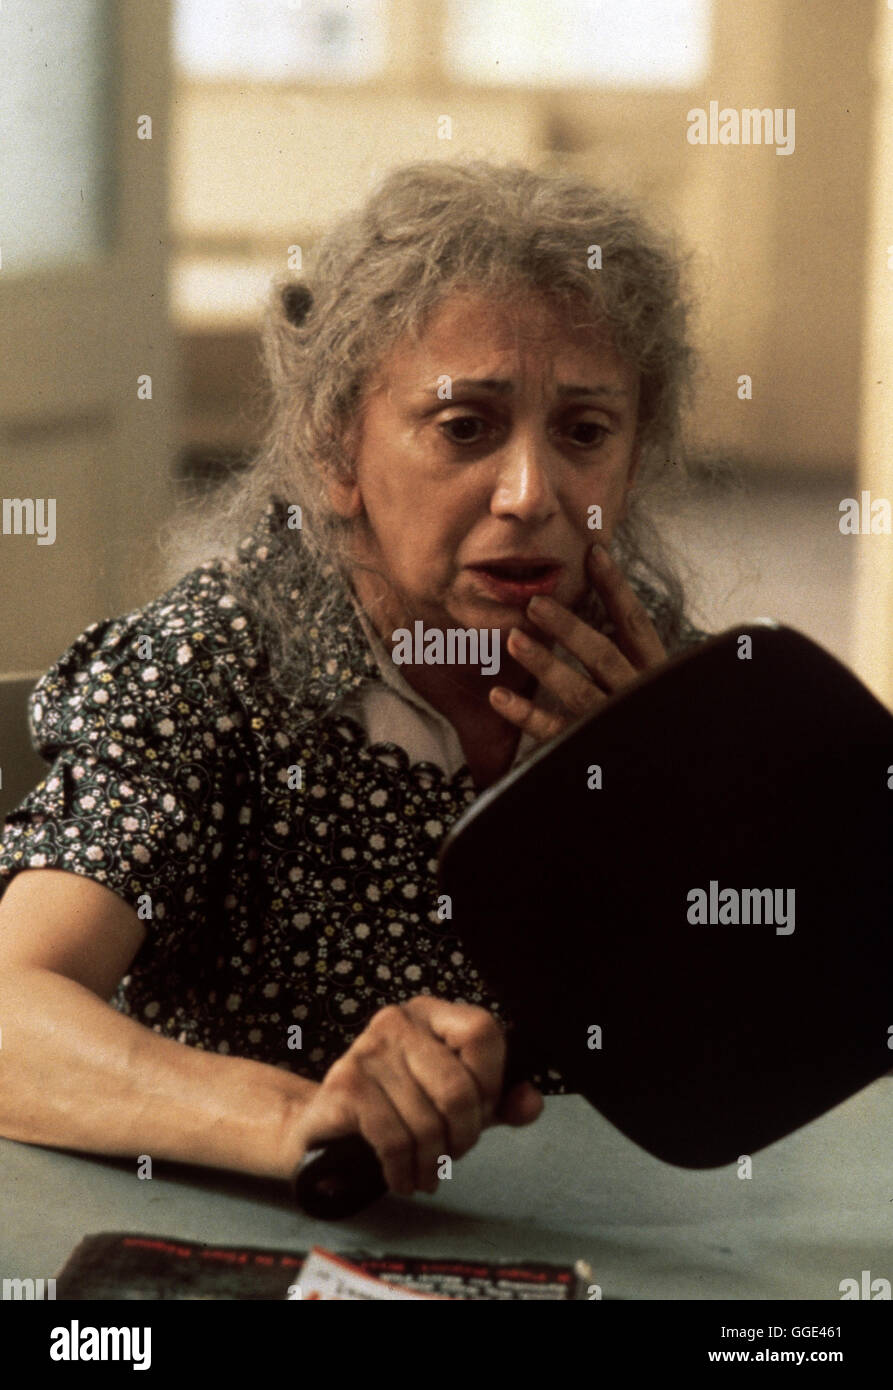 ZEIT DES ERWACHENS / Awakenings USA 1990 / Penny Marshall Lucy Fishman (ALICE DRUMMOND) gehört zu den Menschen, die seit Jahren in geistiger und körperlicher Erstarrung dahinvegetieren. Szene aus 'Zeit des Erwachens', 1990. Regie: Penny Marshall aka. Awakenings Stock Photo